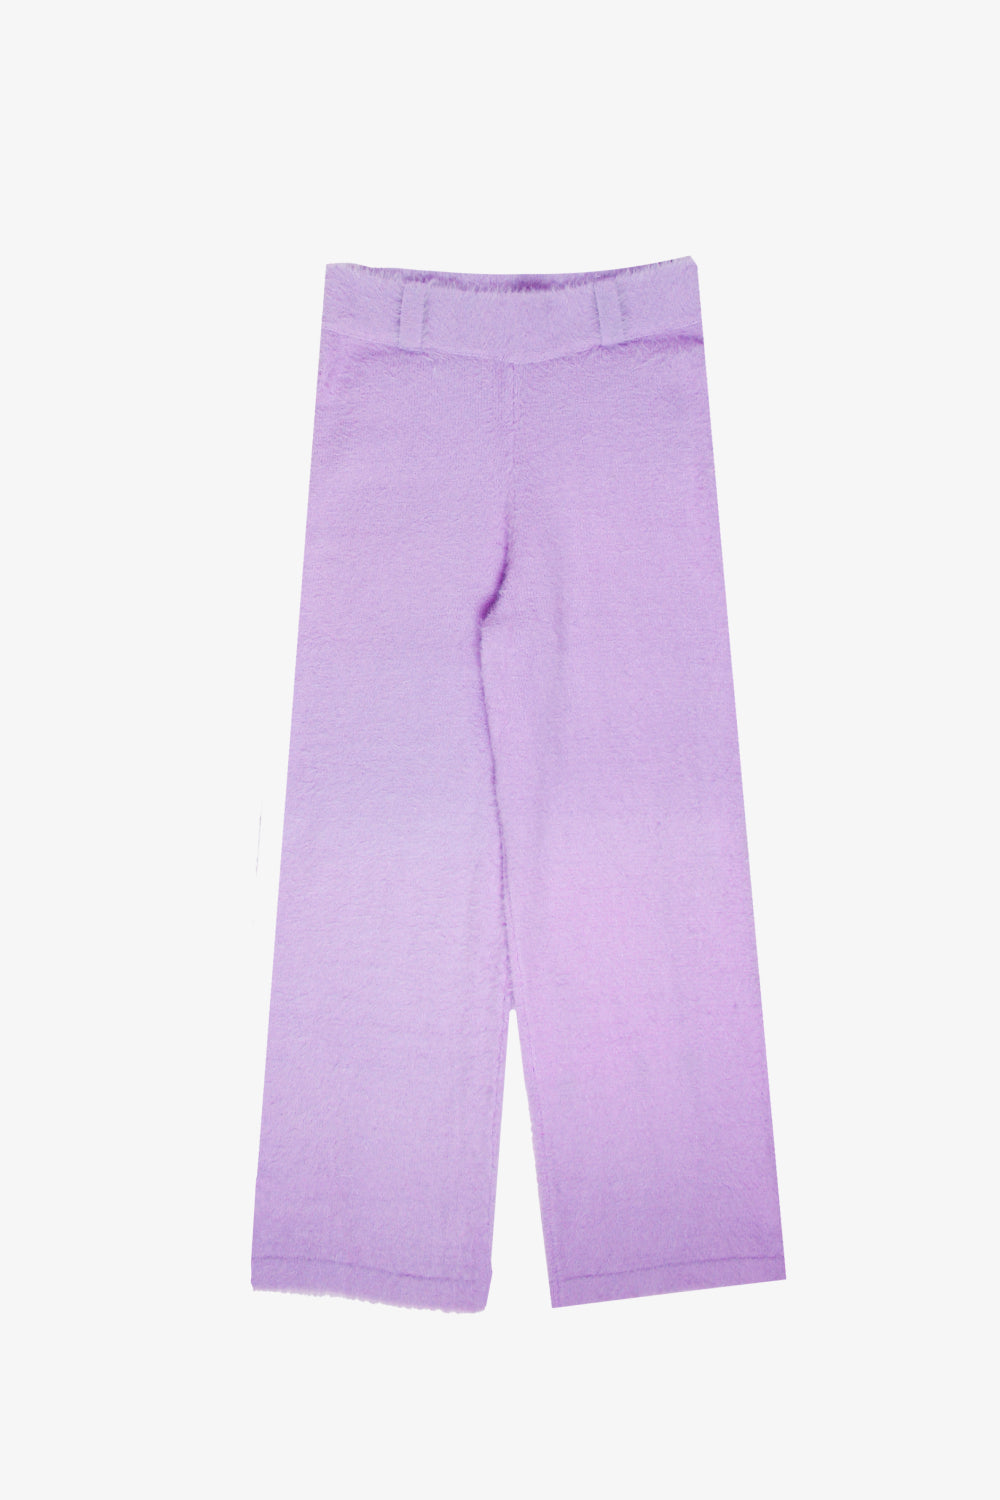 Lavender Mohair Pants